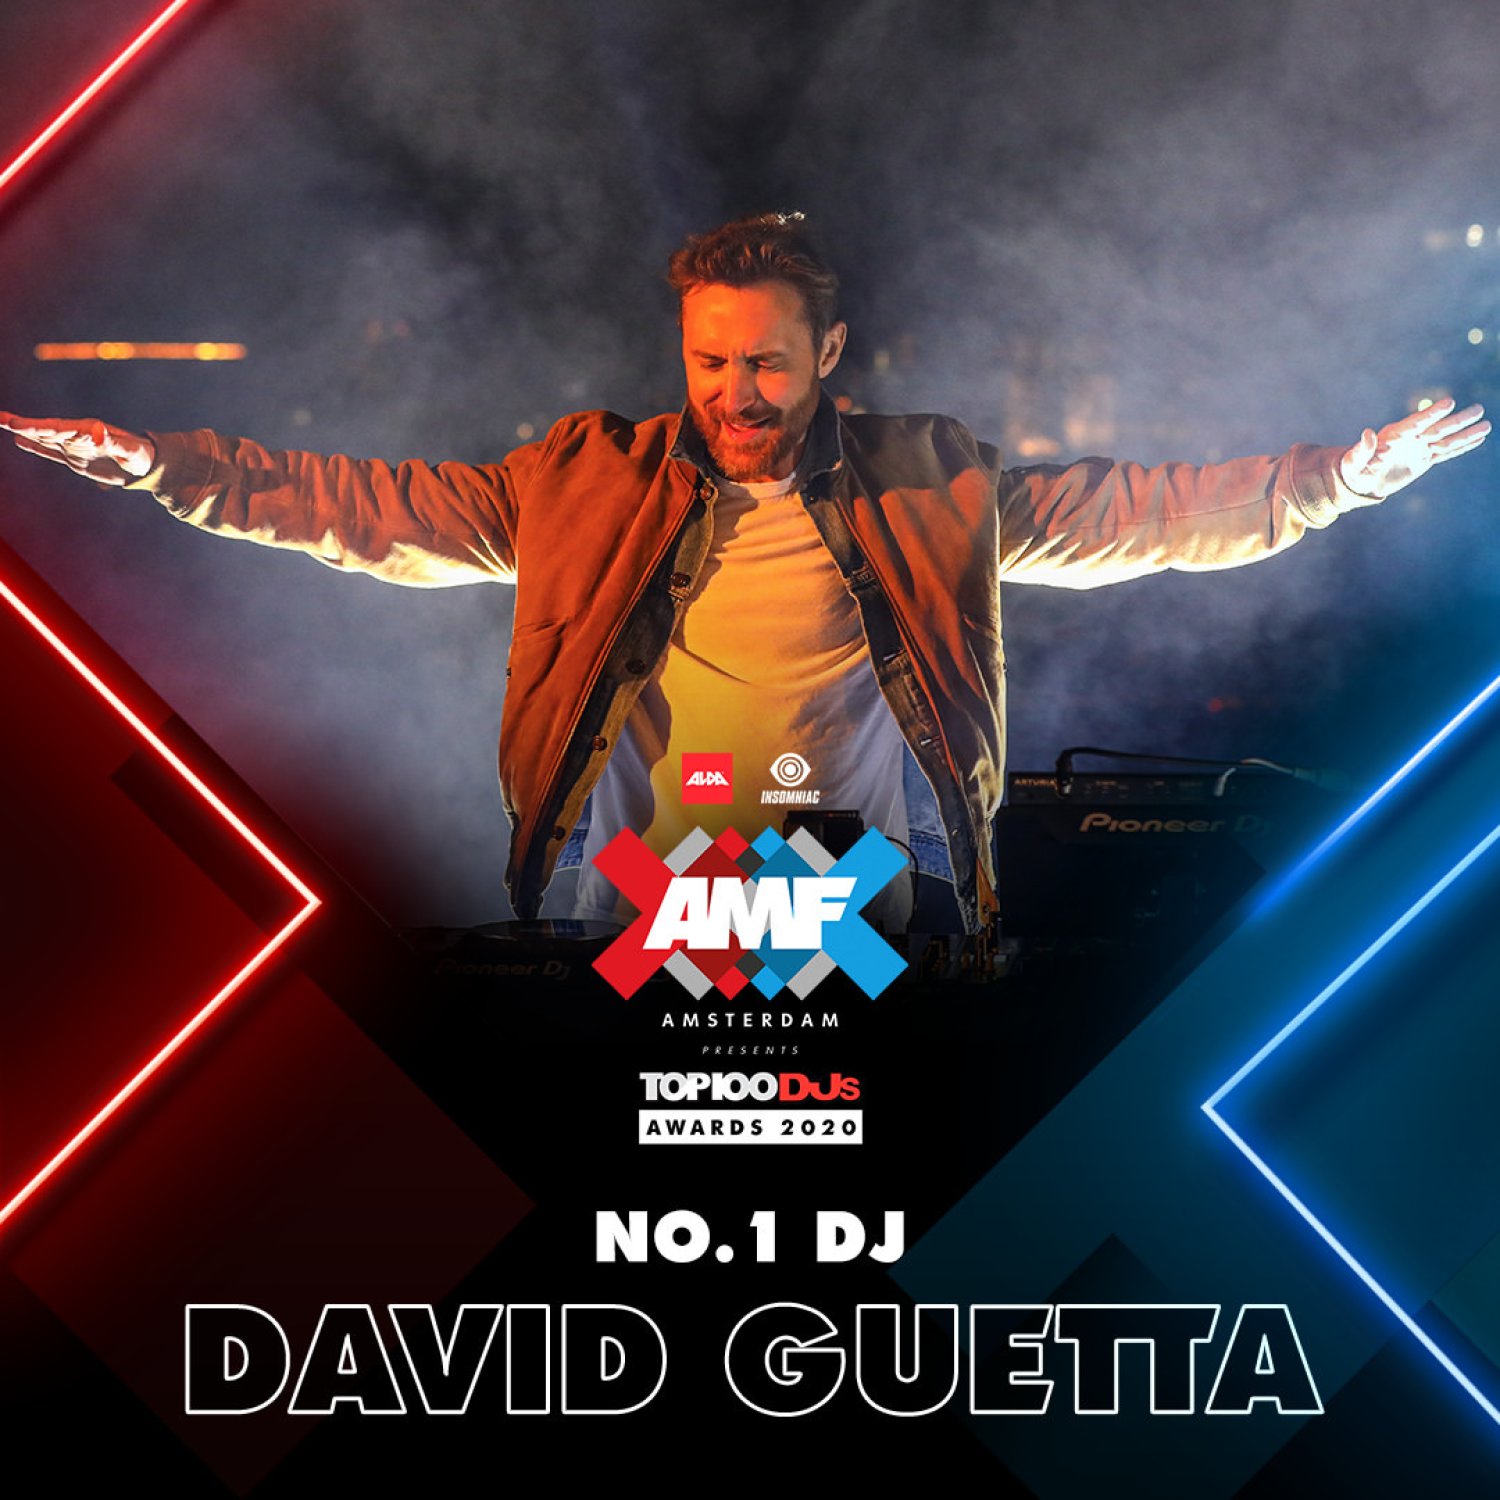 David Guetta est le dj numéro 1 mondial